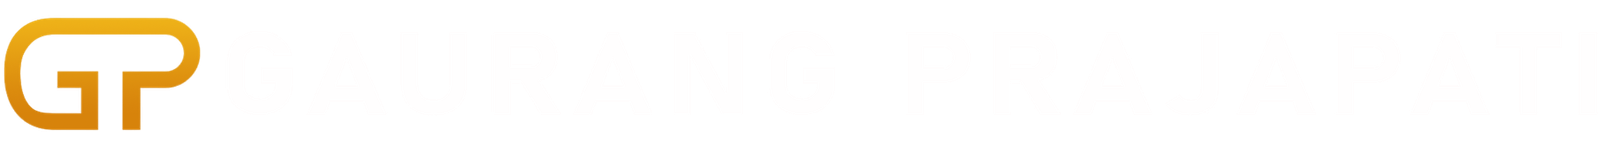 pixxi_logo